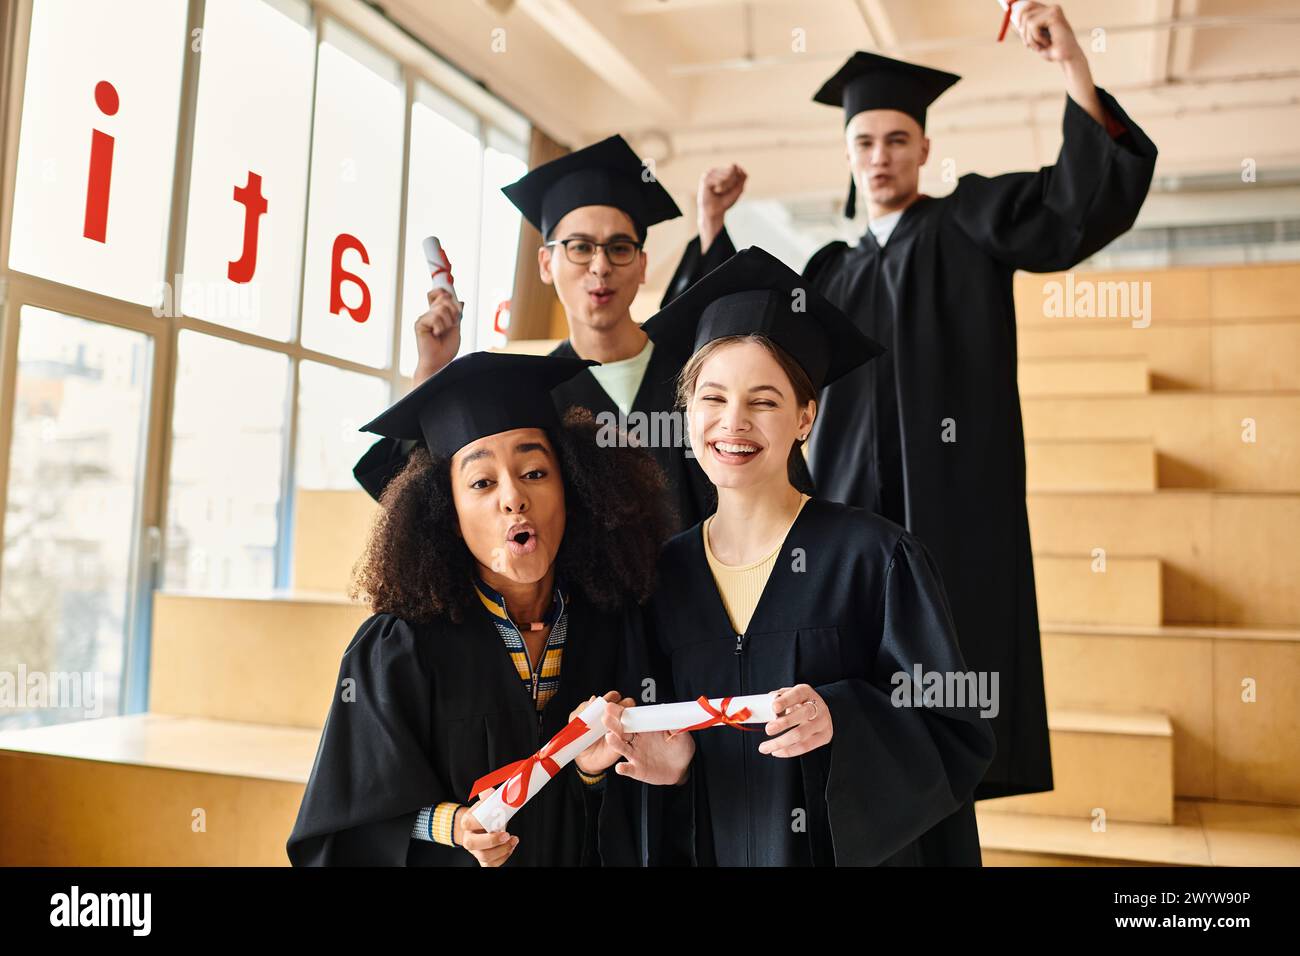 Multikulturelle Studenten in Abschlusskleidern und -Mützen posieren nach Abschluss ihrer akademischen Reise gerne für ein Foto. Stockfoto